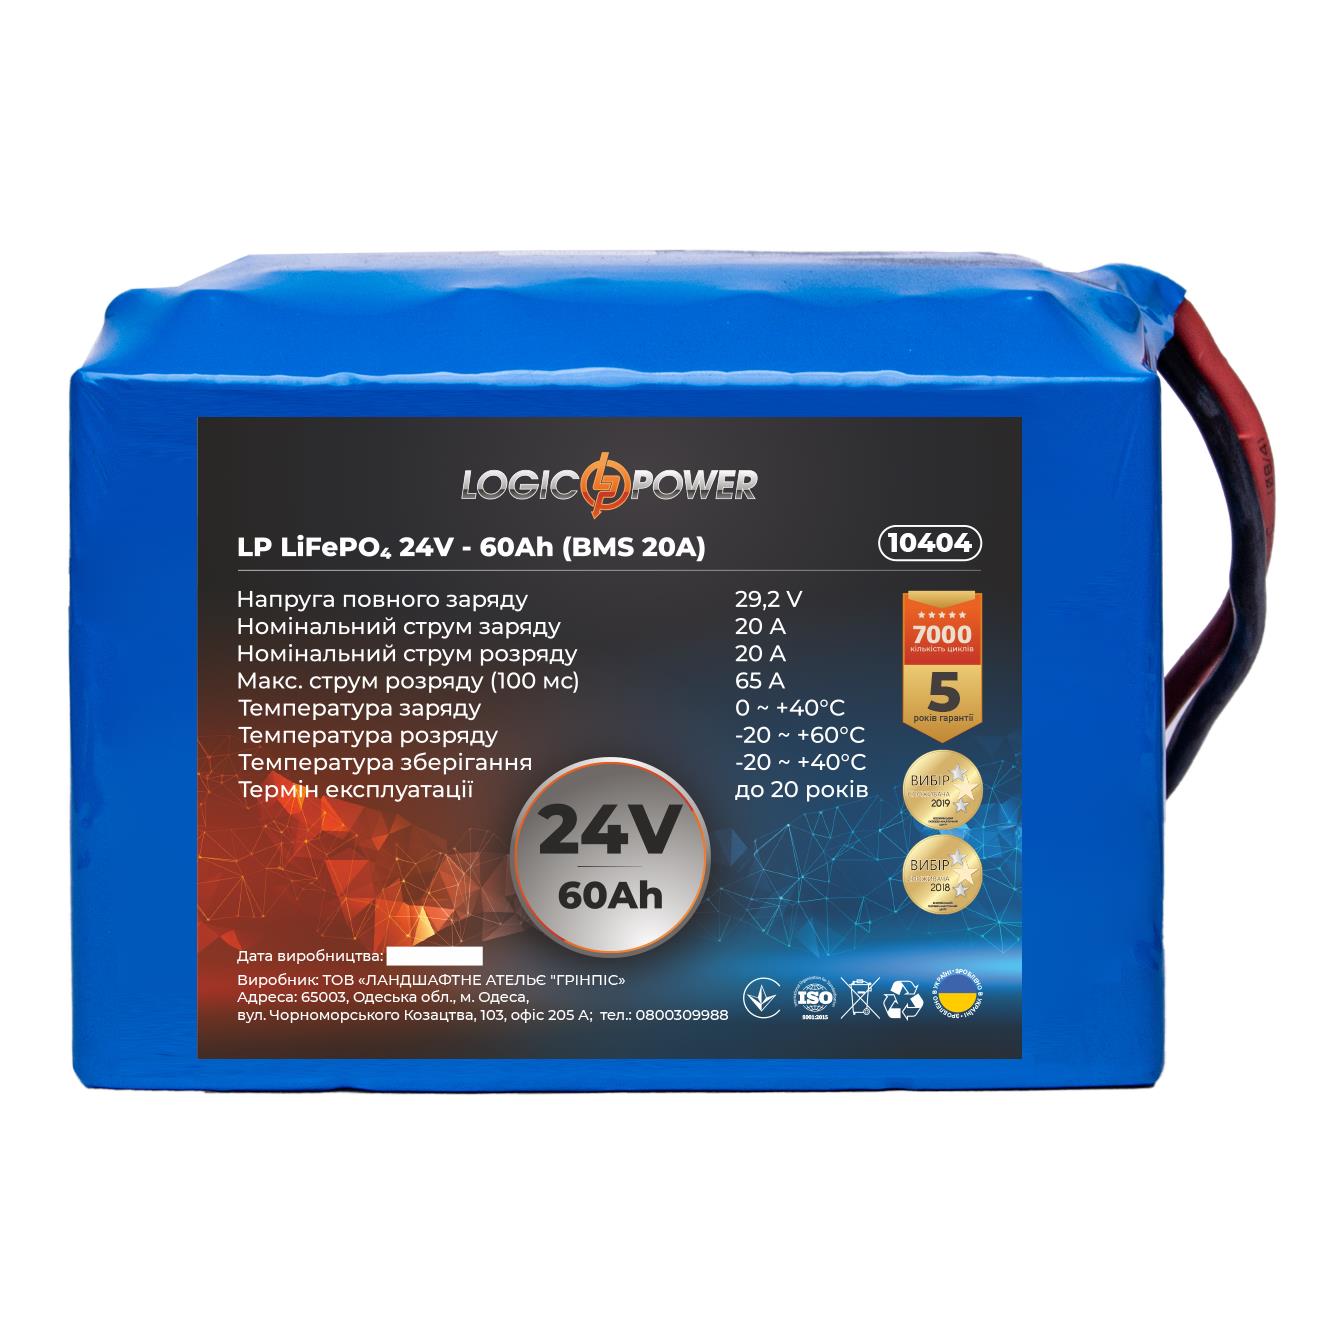 Акумулятор літій-залізо-фосфатний LogicPower LP LiFePO4 24V - 60 Ah (BMS 20A) (10404)